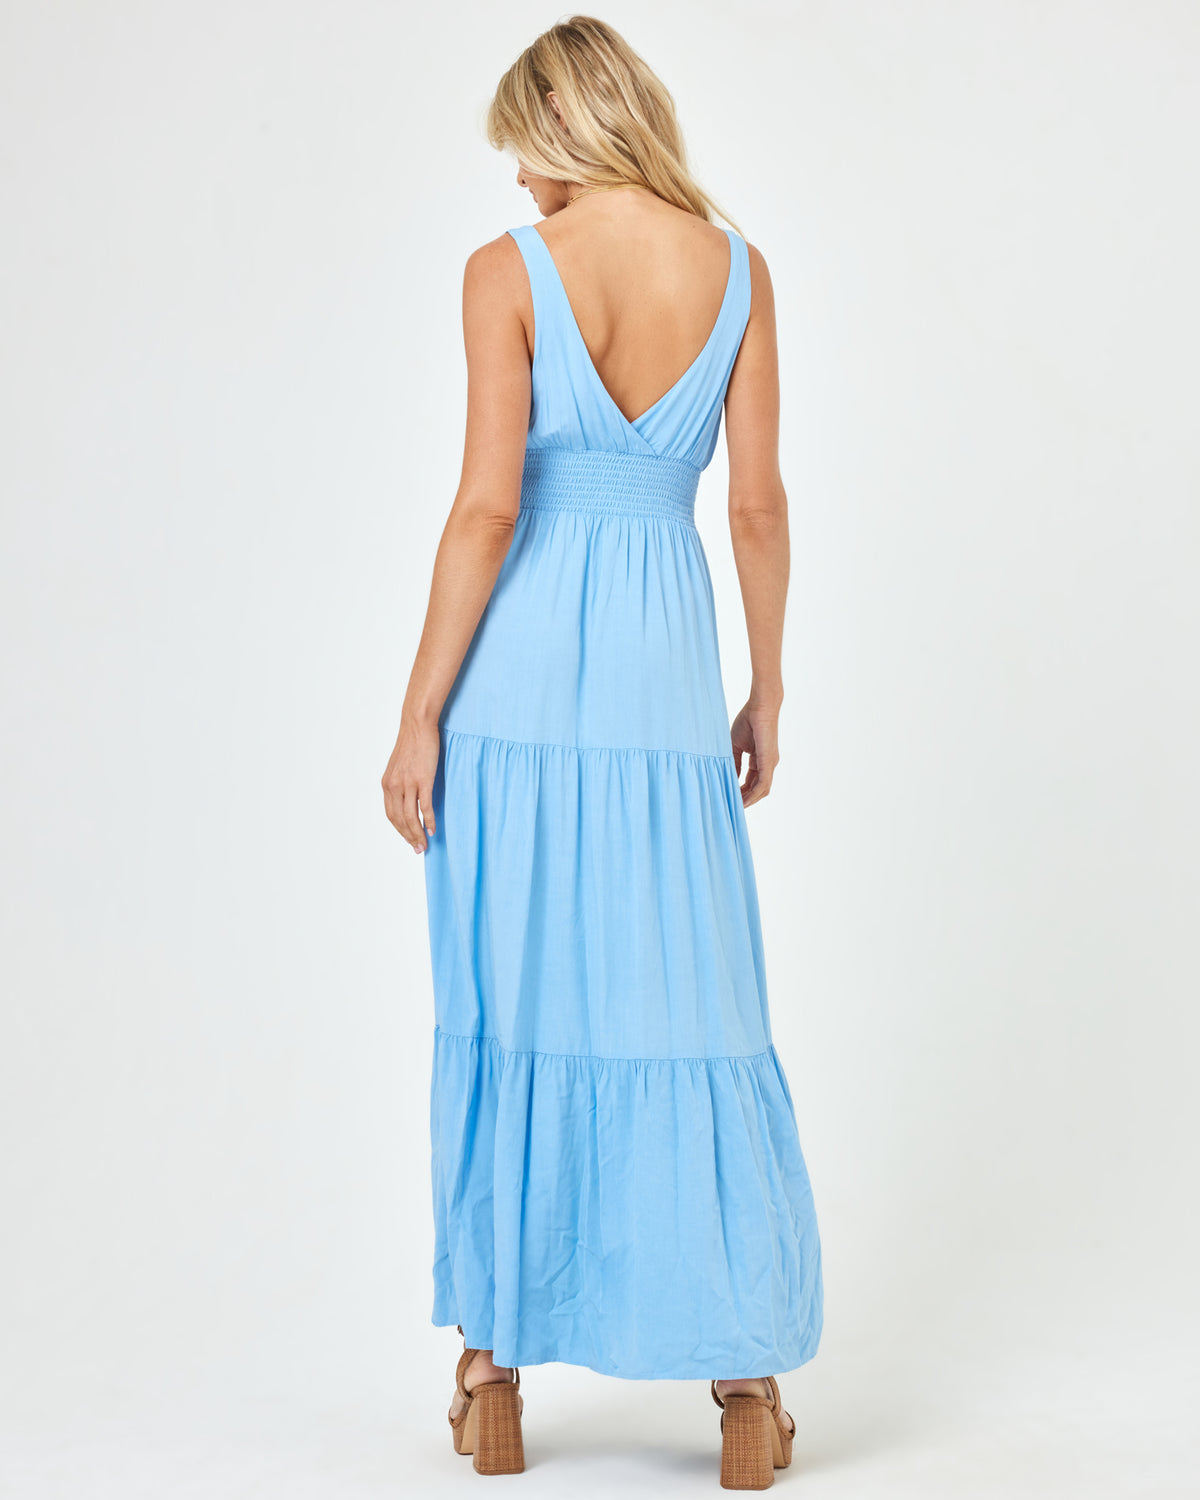 Lilikoi Dress - Aura Aura | Model: Lura (size: S)